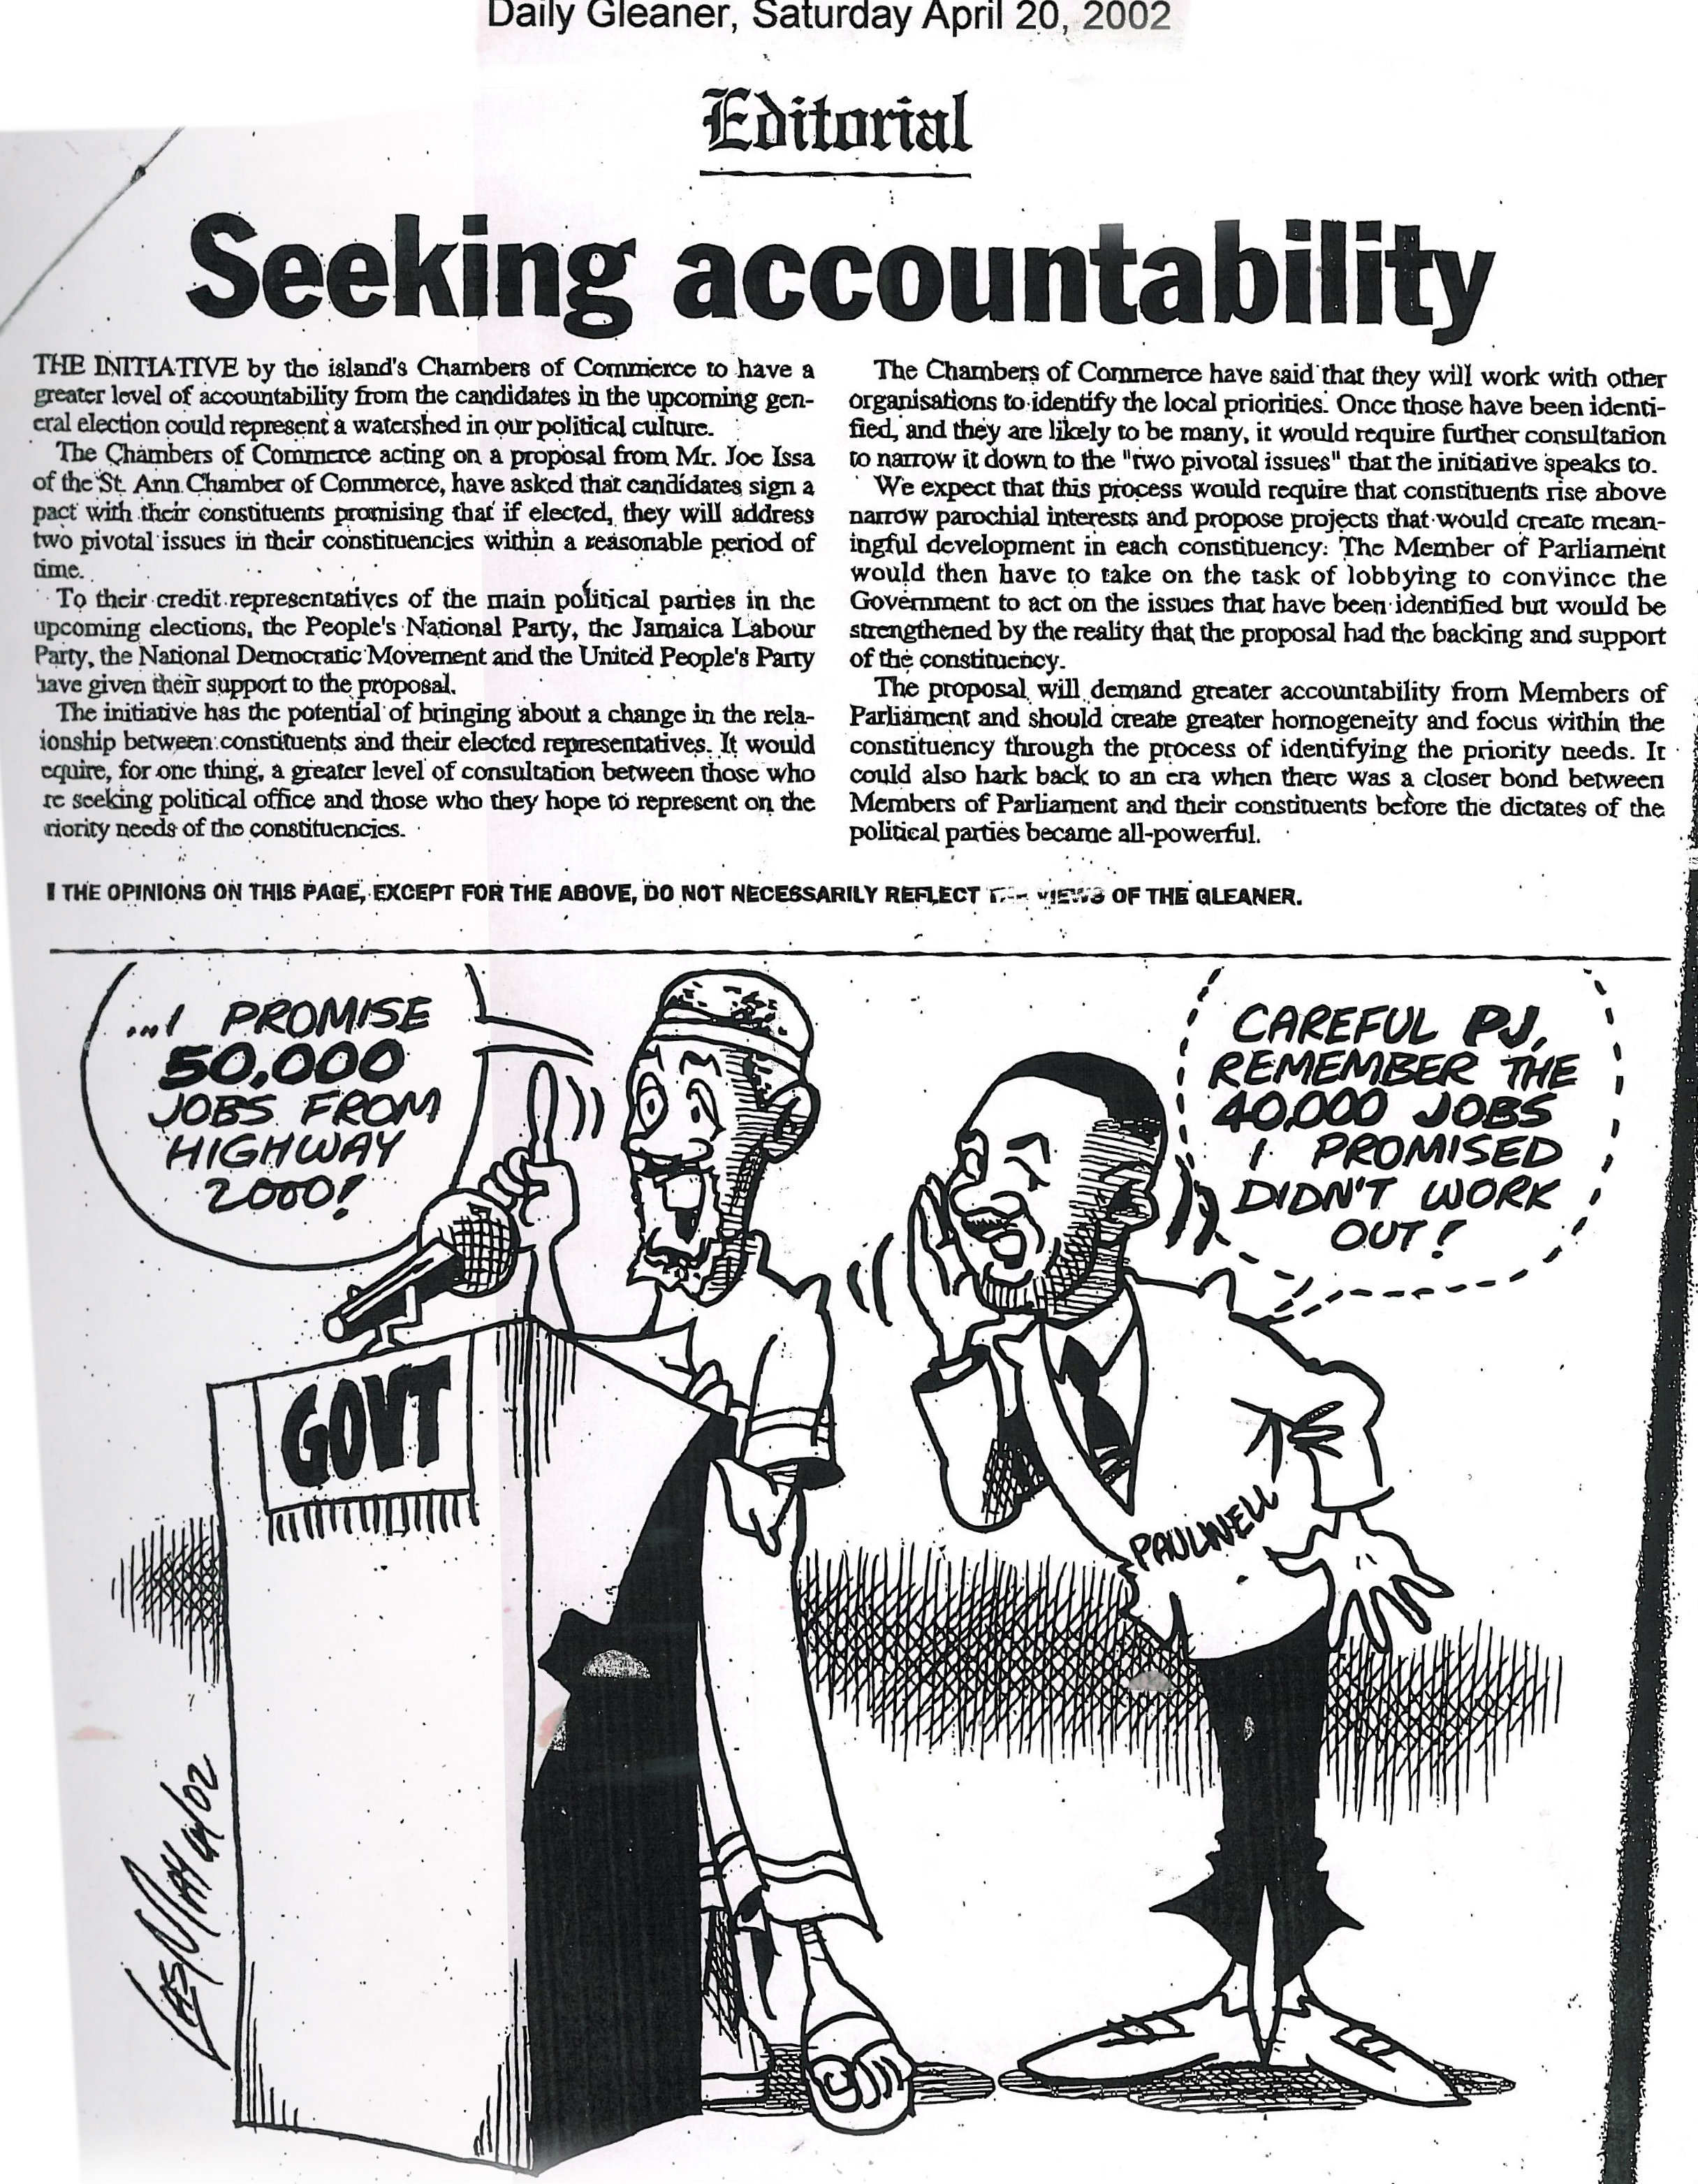 Seeking accountability